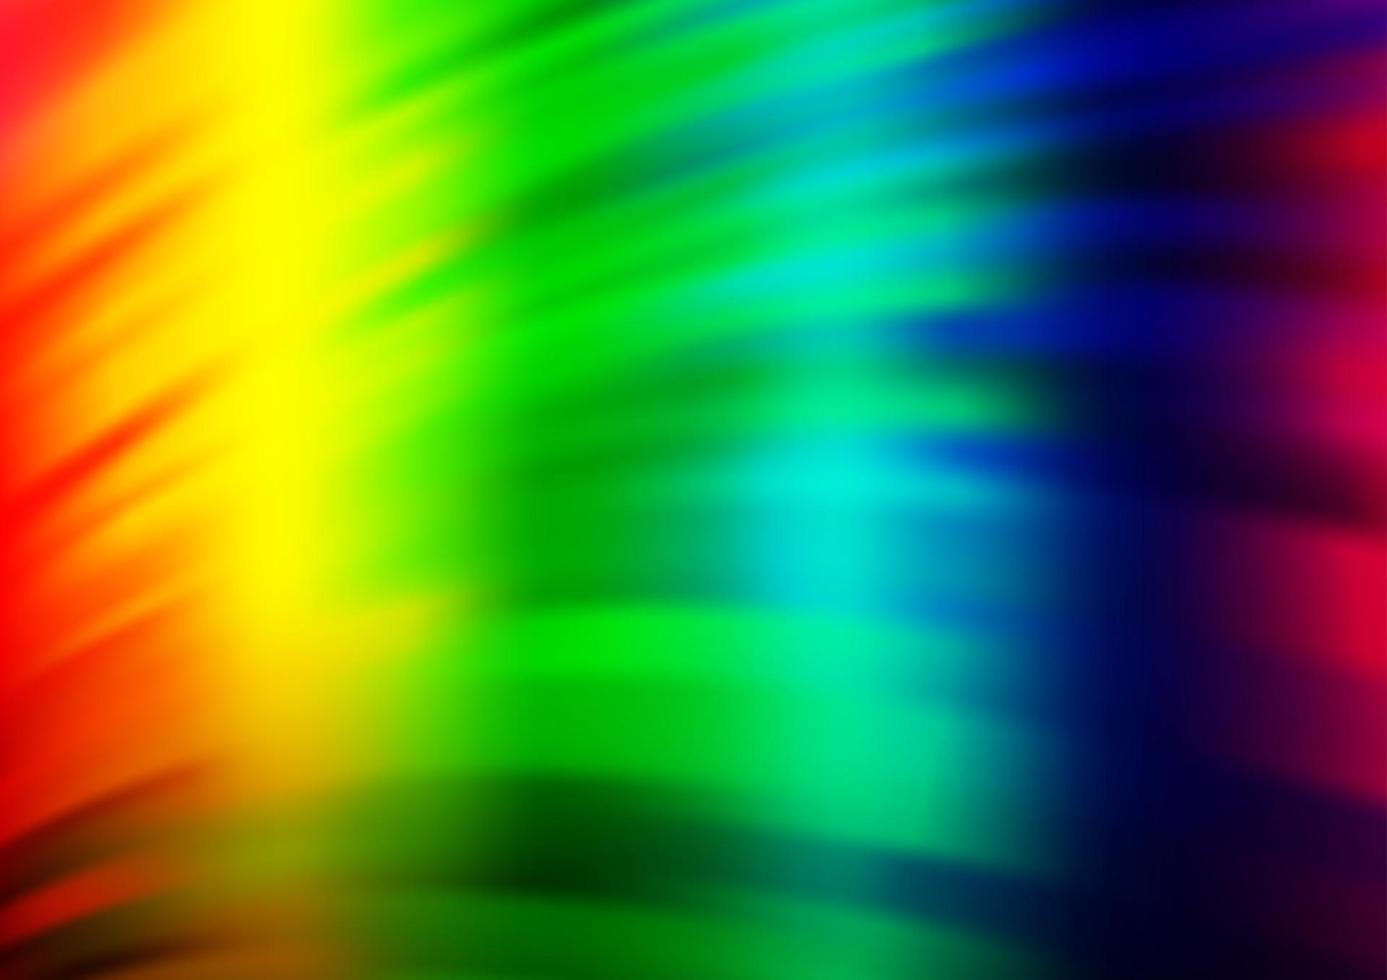 Fondo de vector de arco iris multicolor claro con líneas dobladas.